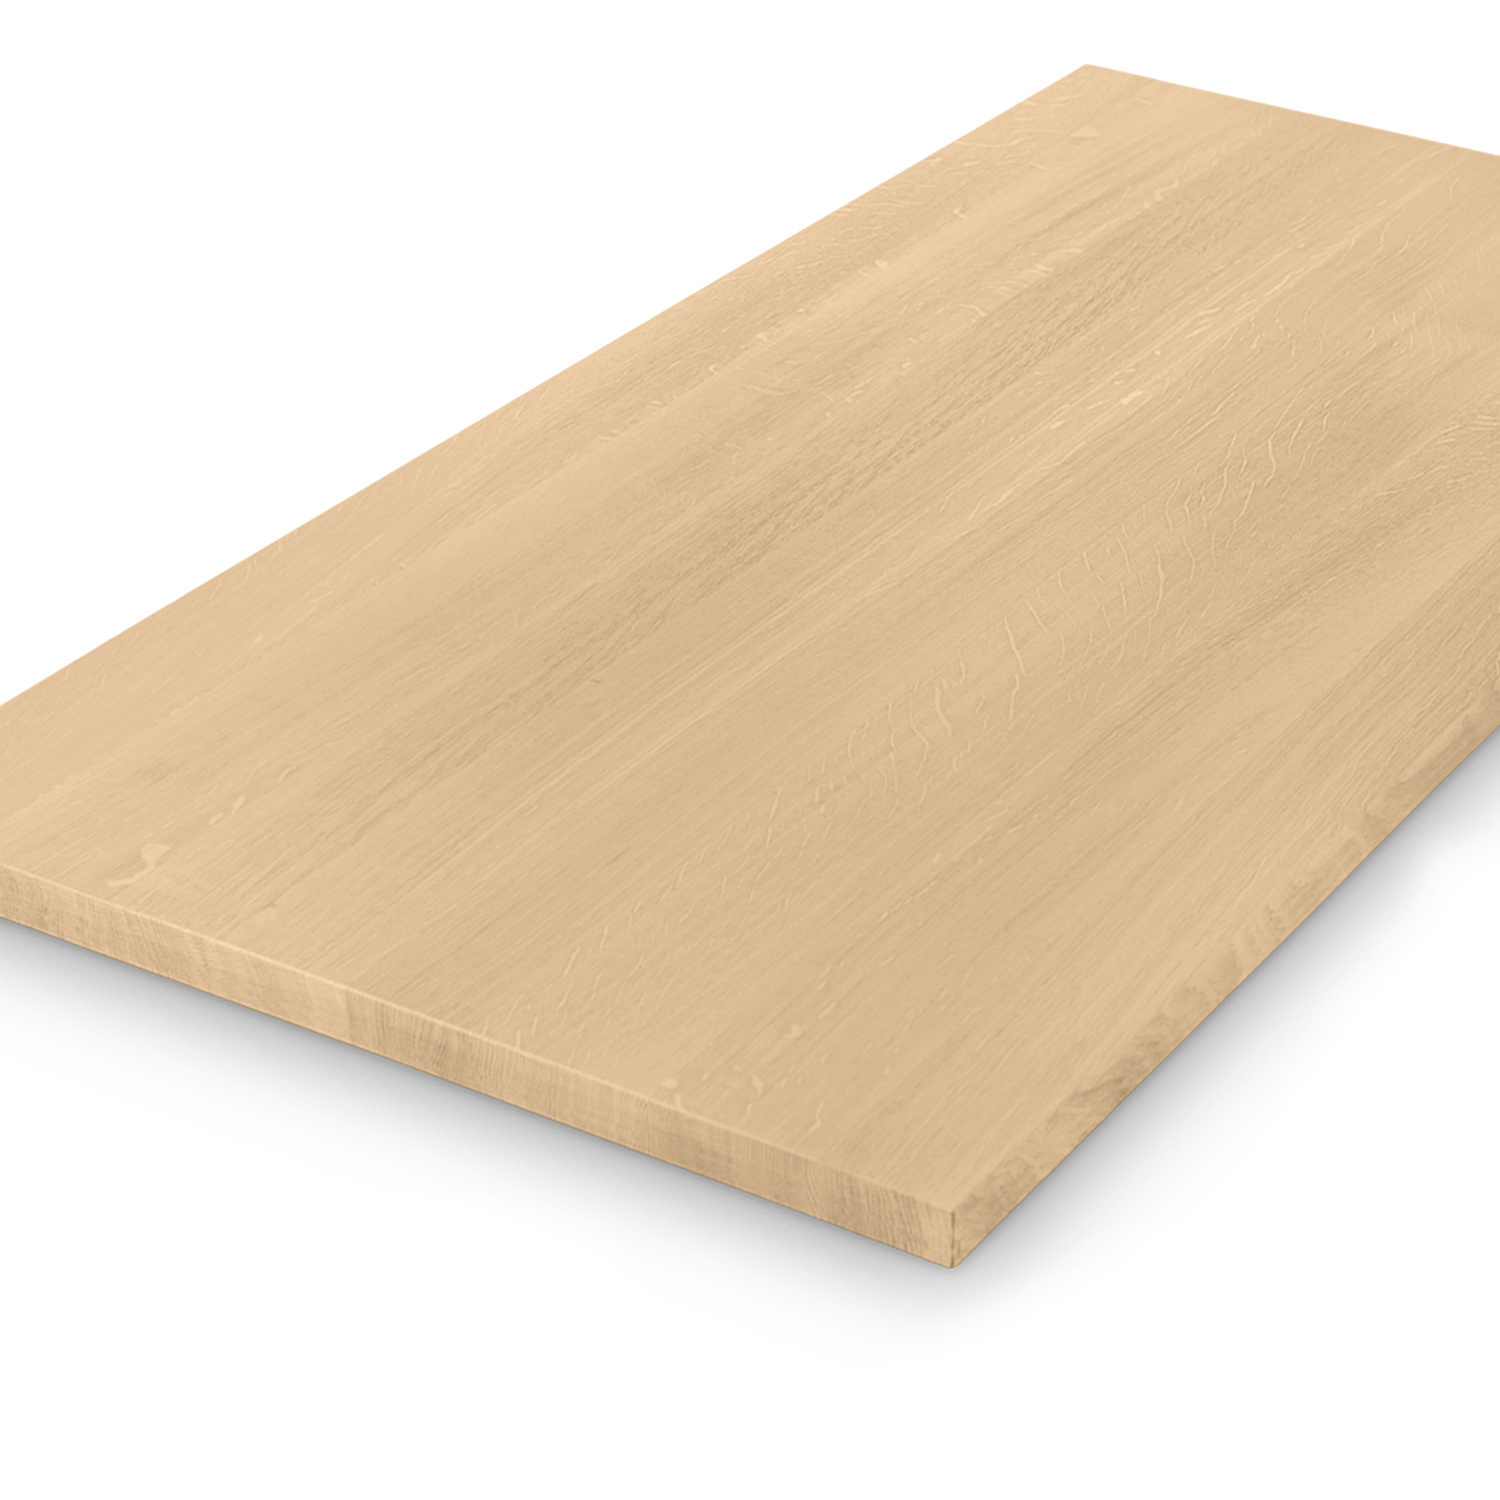  Eiken tafelblad op maat - 4 cm dik (1-laag) - foutvrij Europees eikenhout - met brede lamellen (circa 10-12 cm) - verlijmd kd 8-12% - 50-120x50-248 cm